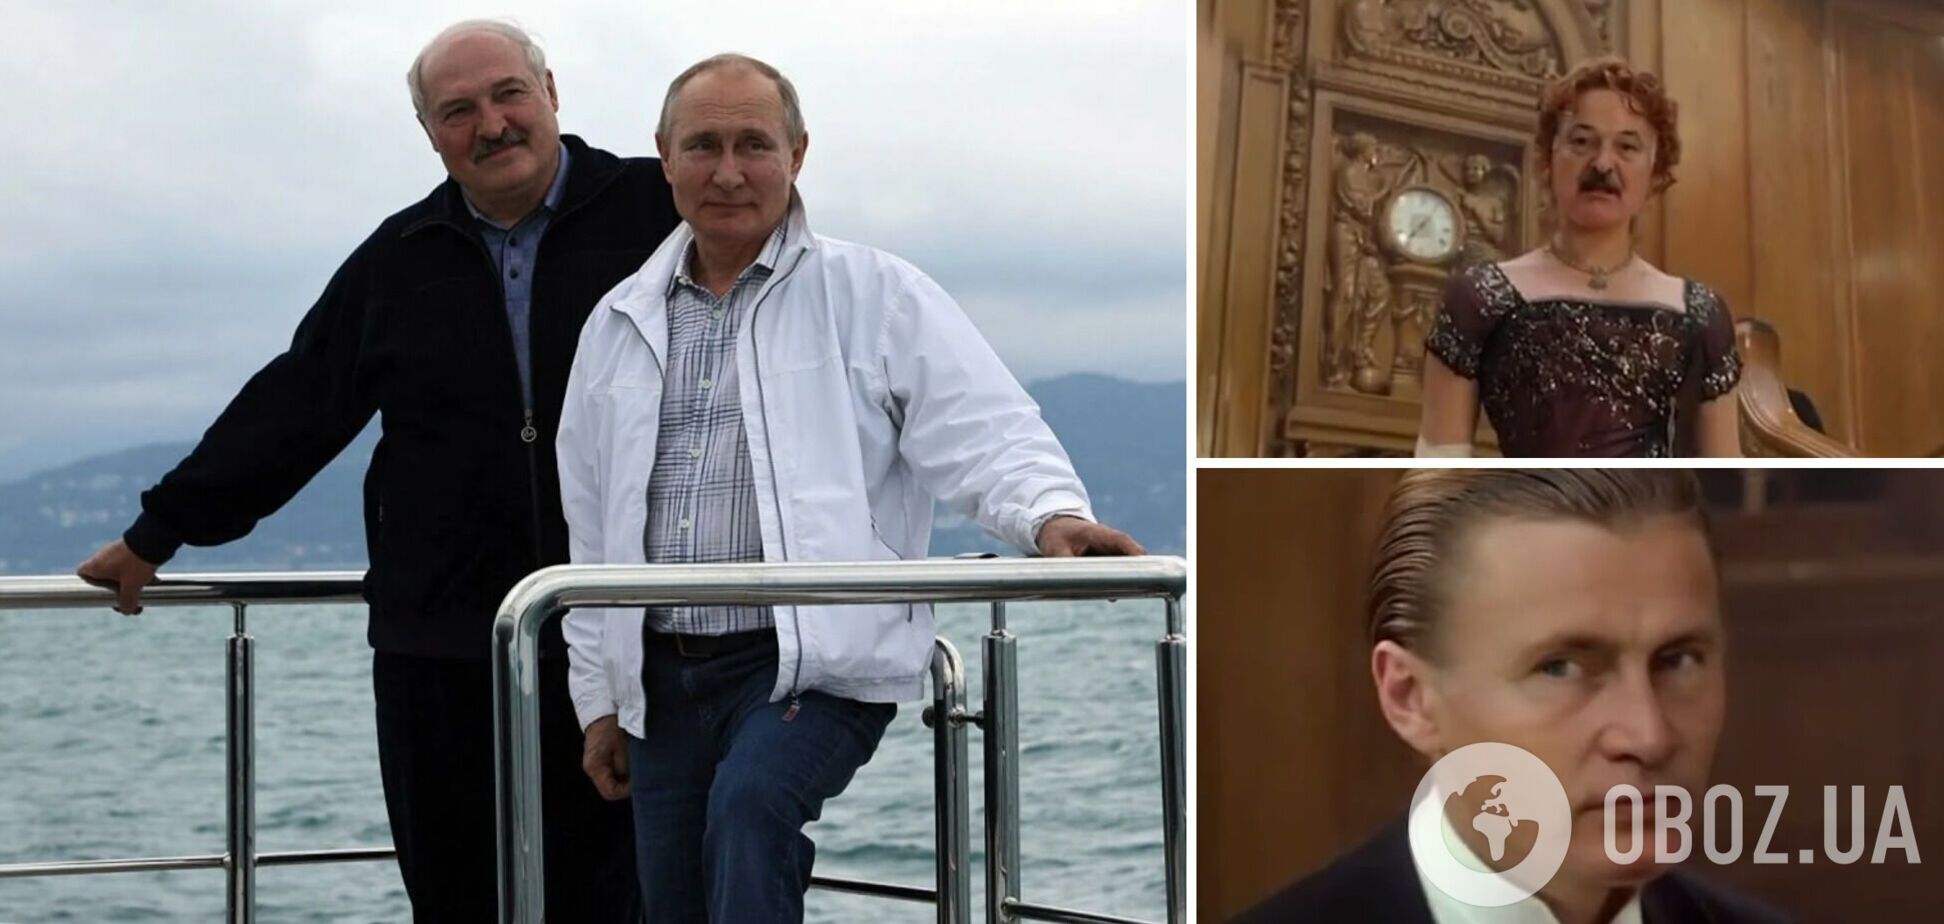 Путіну та Лукашенку приготуватися. У мережі показали 'таємні кадри' з крейсера 'Москва' перед затопленням